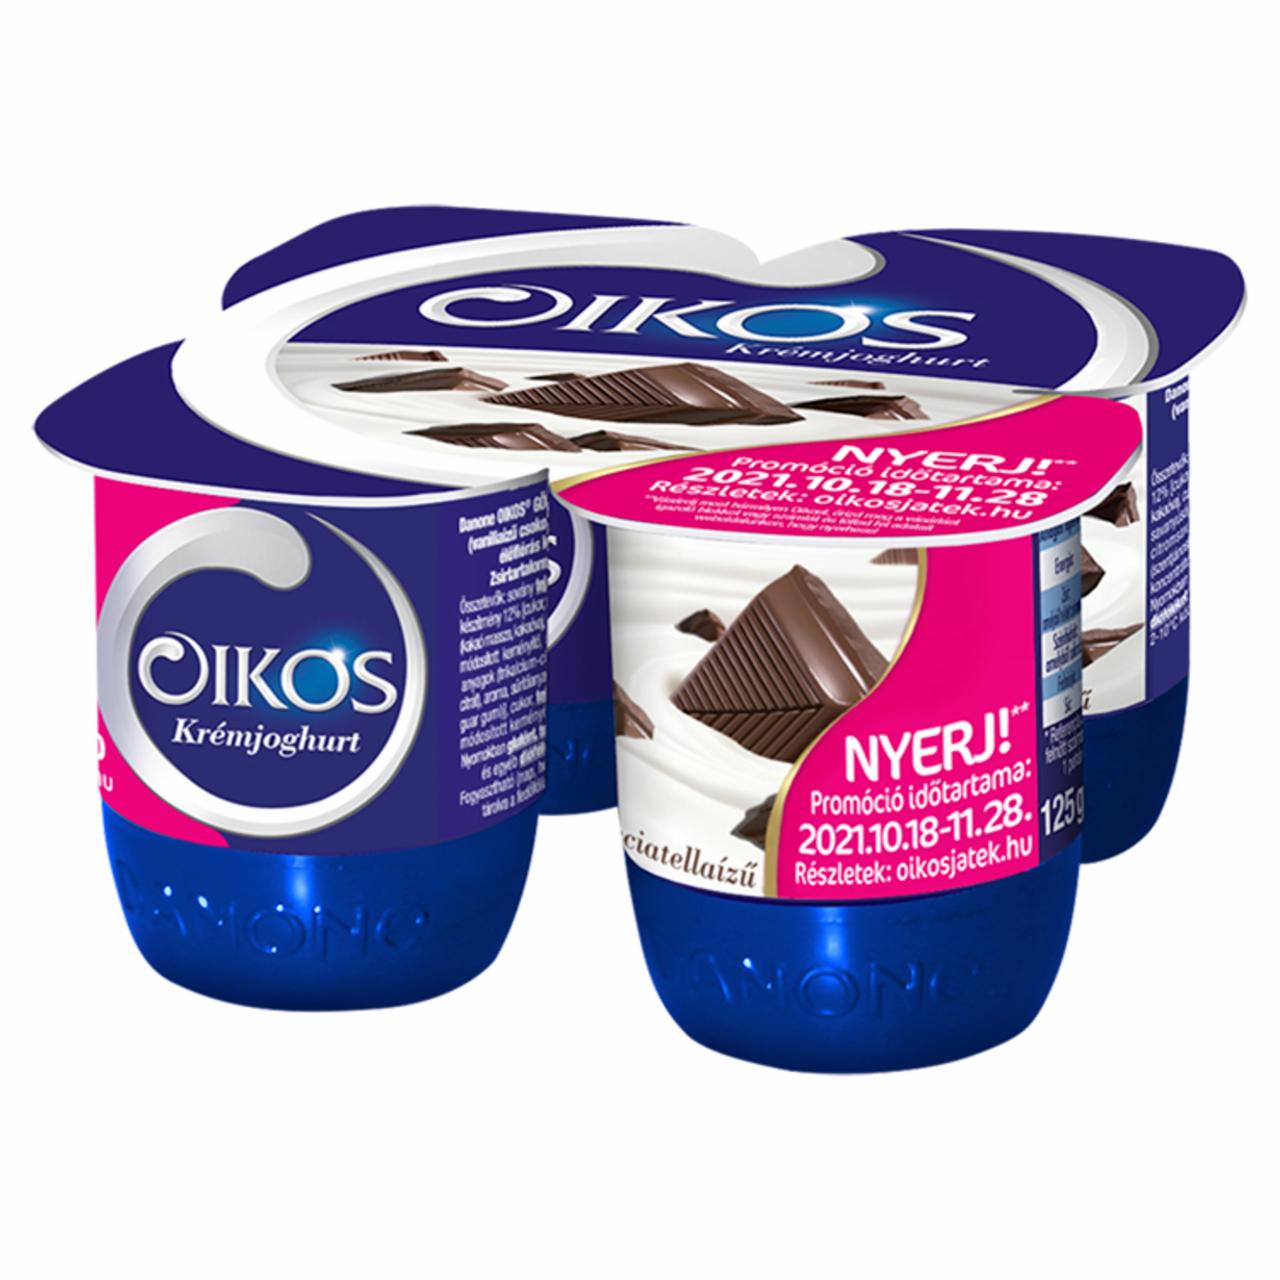 Képek - Danone Oikos Görög stracciatellaízű élőflórás krémjoghurt 4 x 125 g